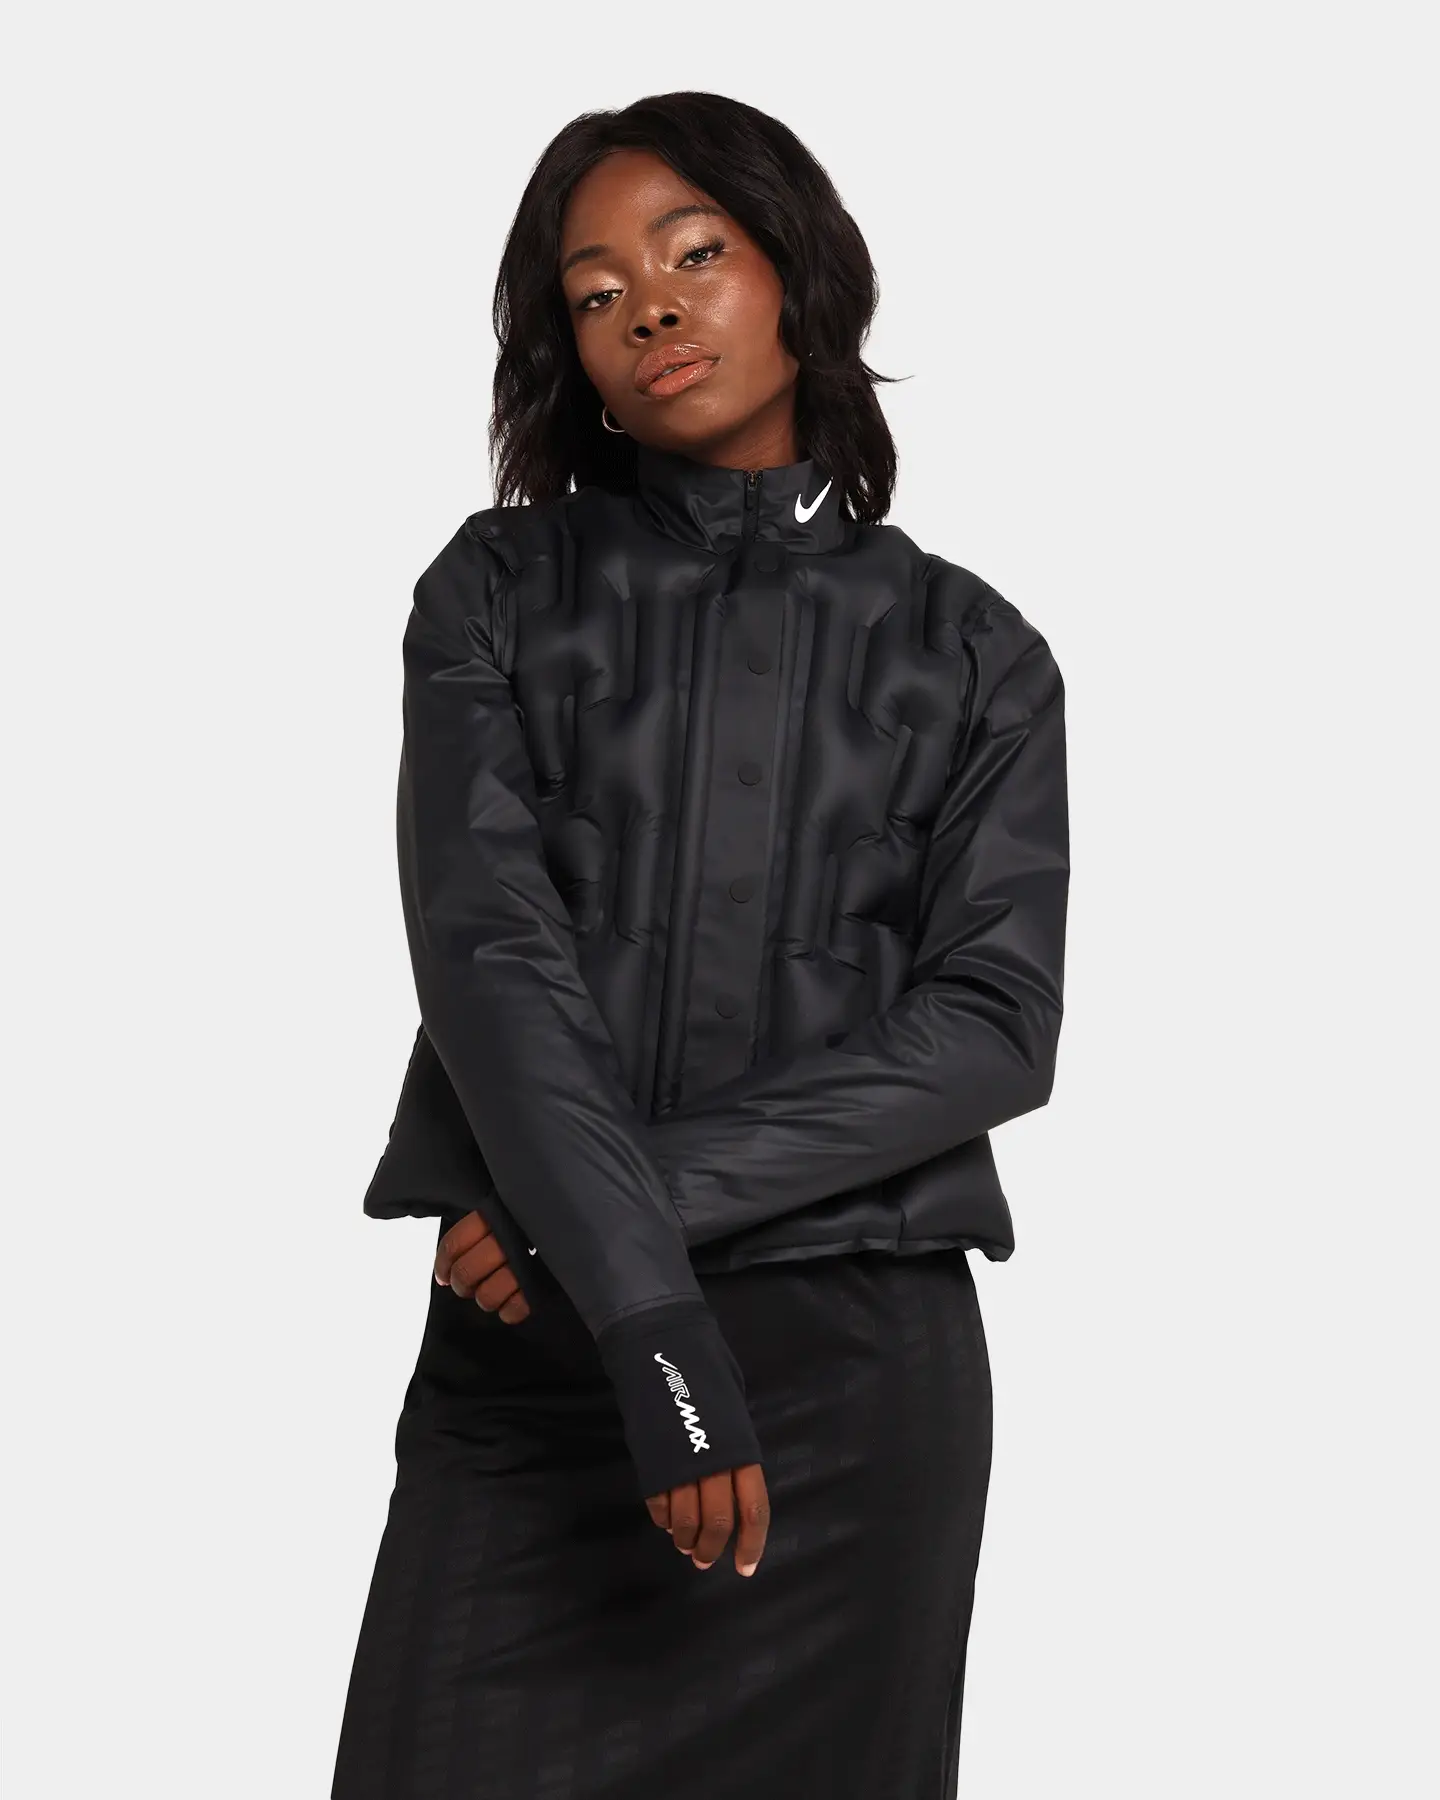 Nike Women's Nike Sportswear Inflatable Jacket Black - Size 8 (S)